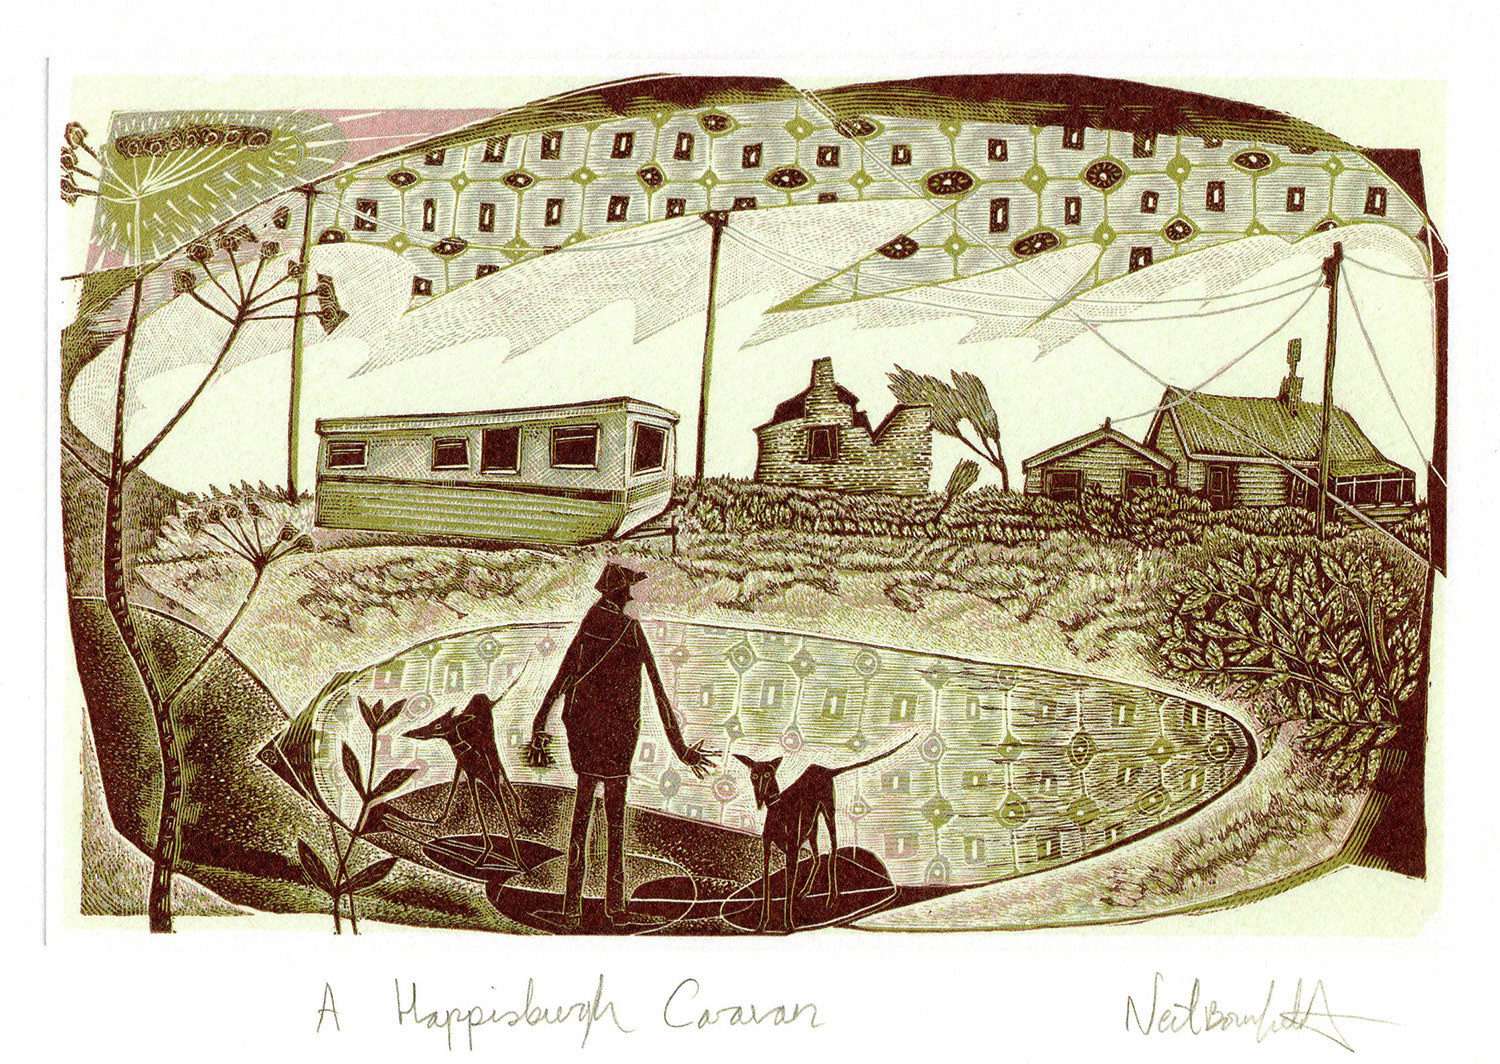 A Happisburgh Caravan - Printmakers Art card